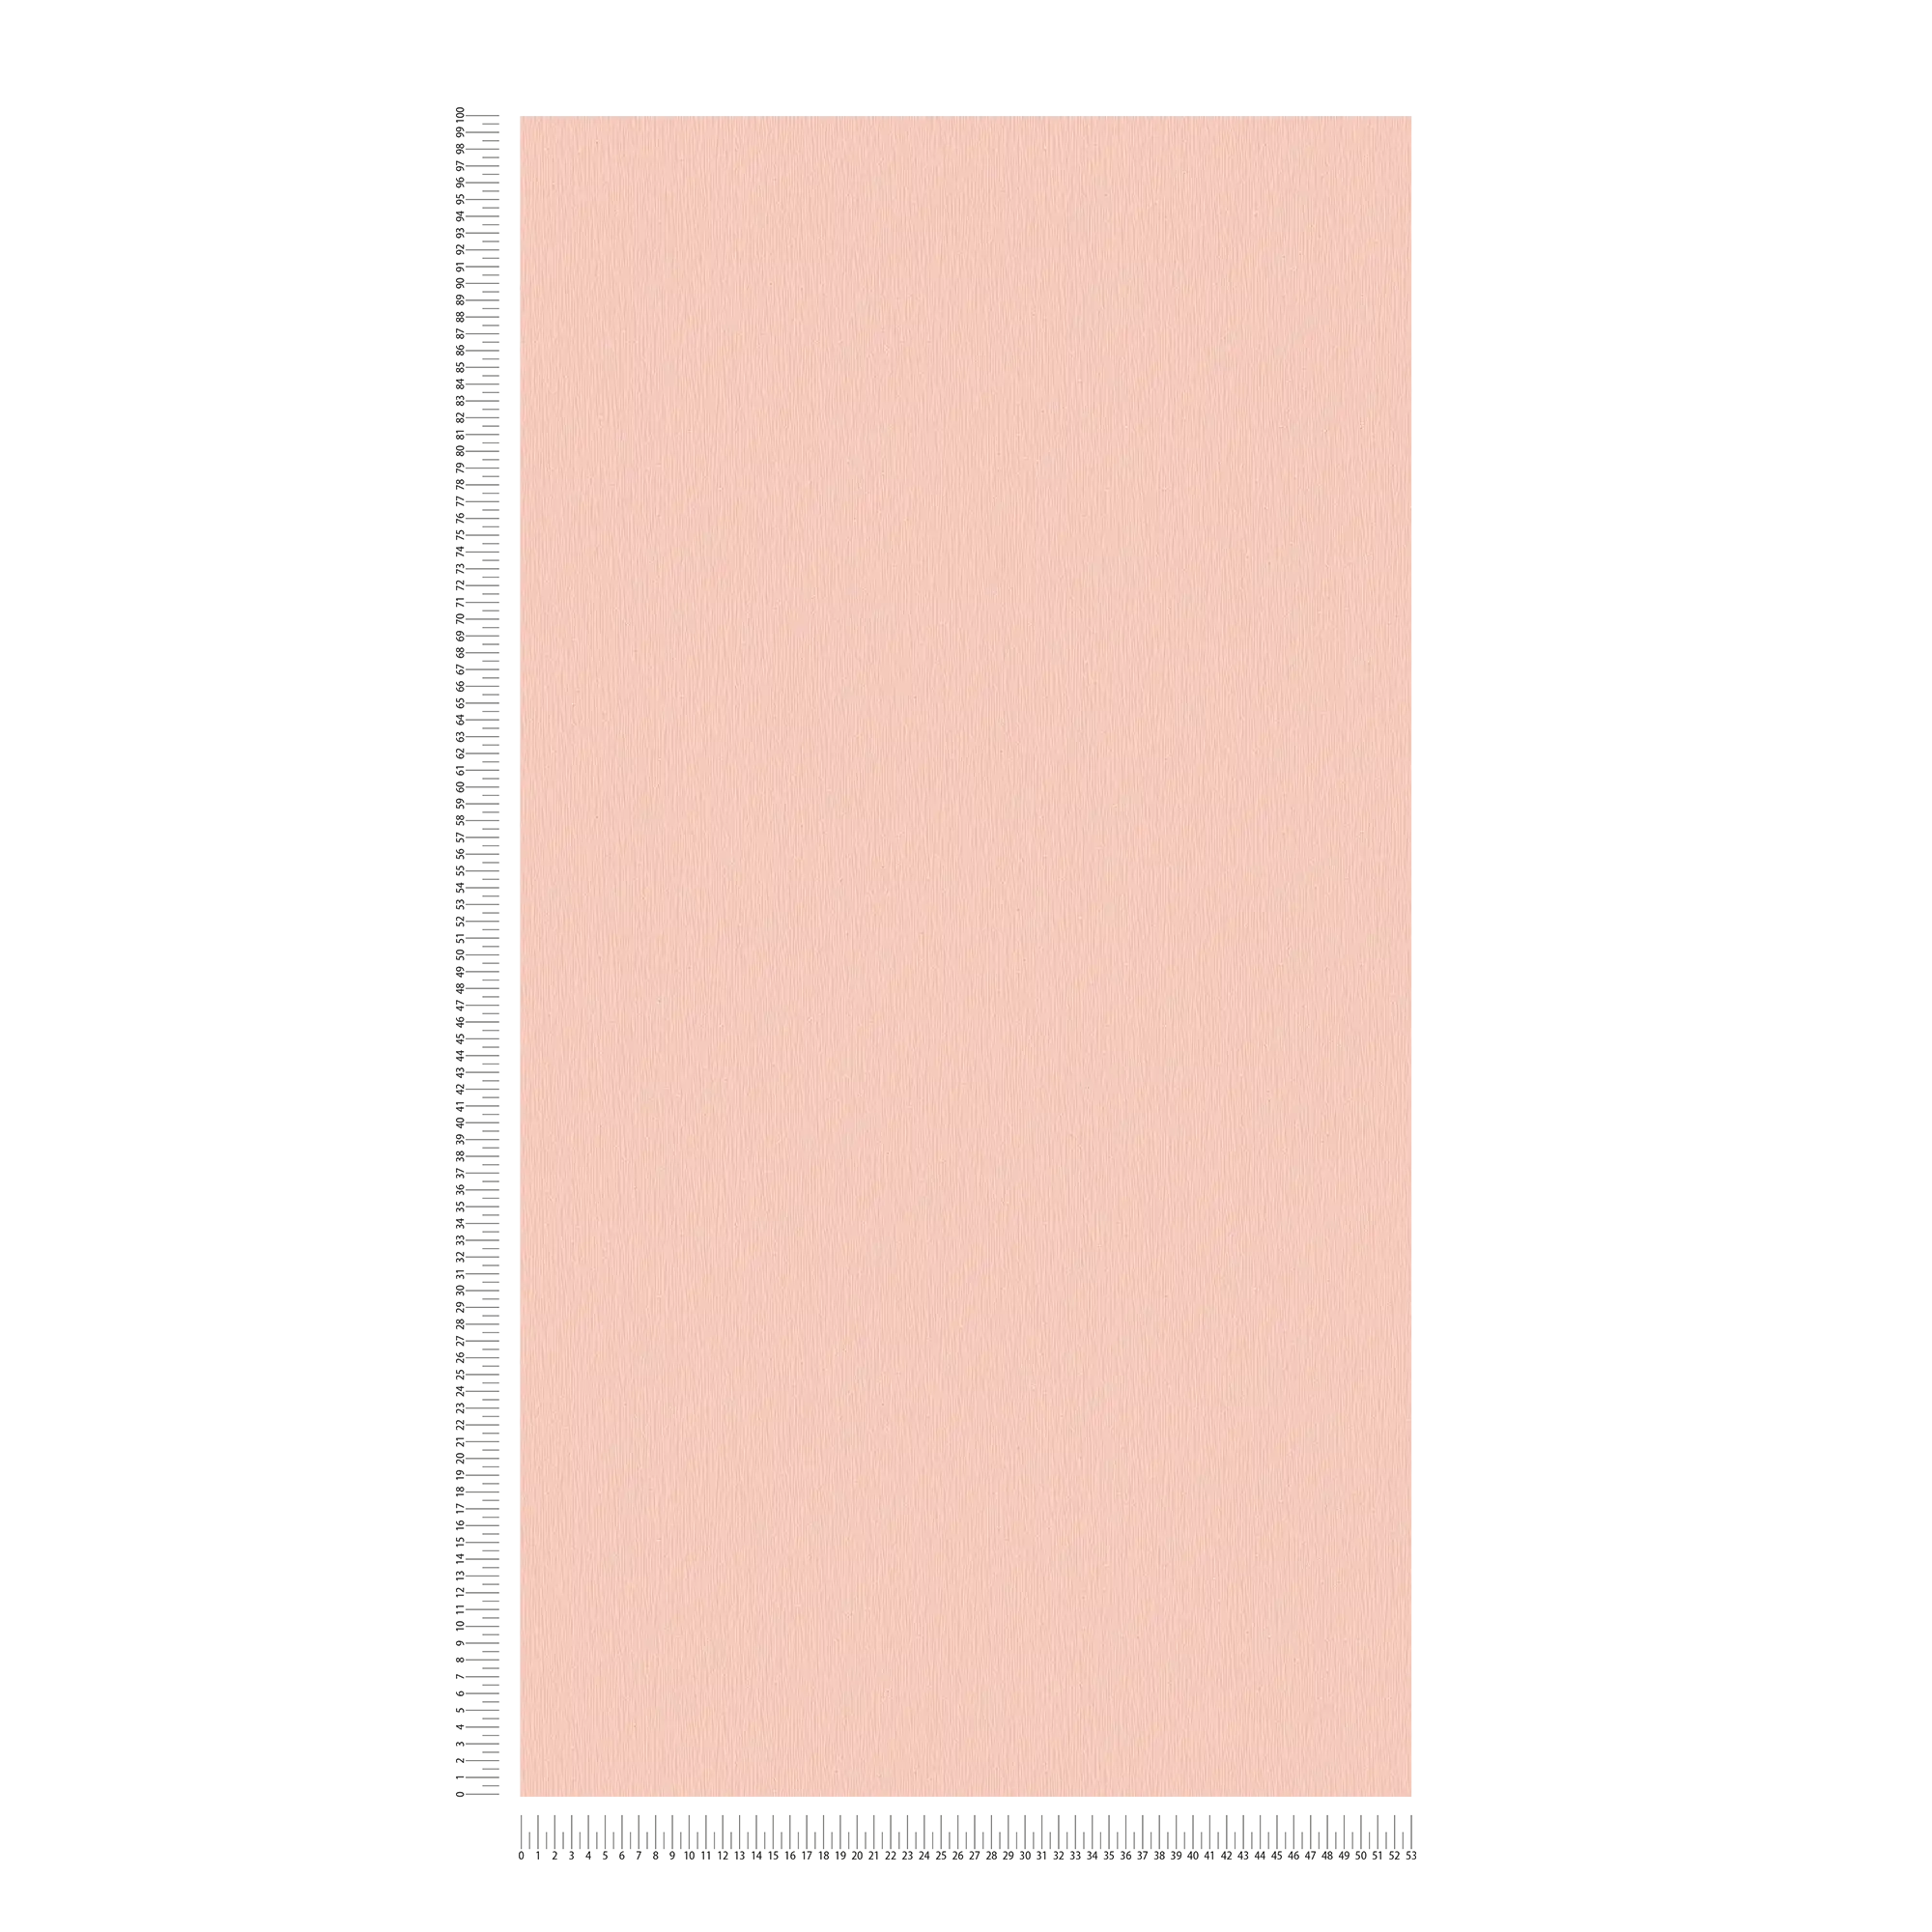             Rosa Vliestapete mit einfarbigem Strukturdesign – Rosa, Weiß
        